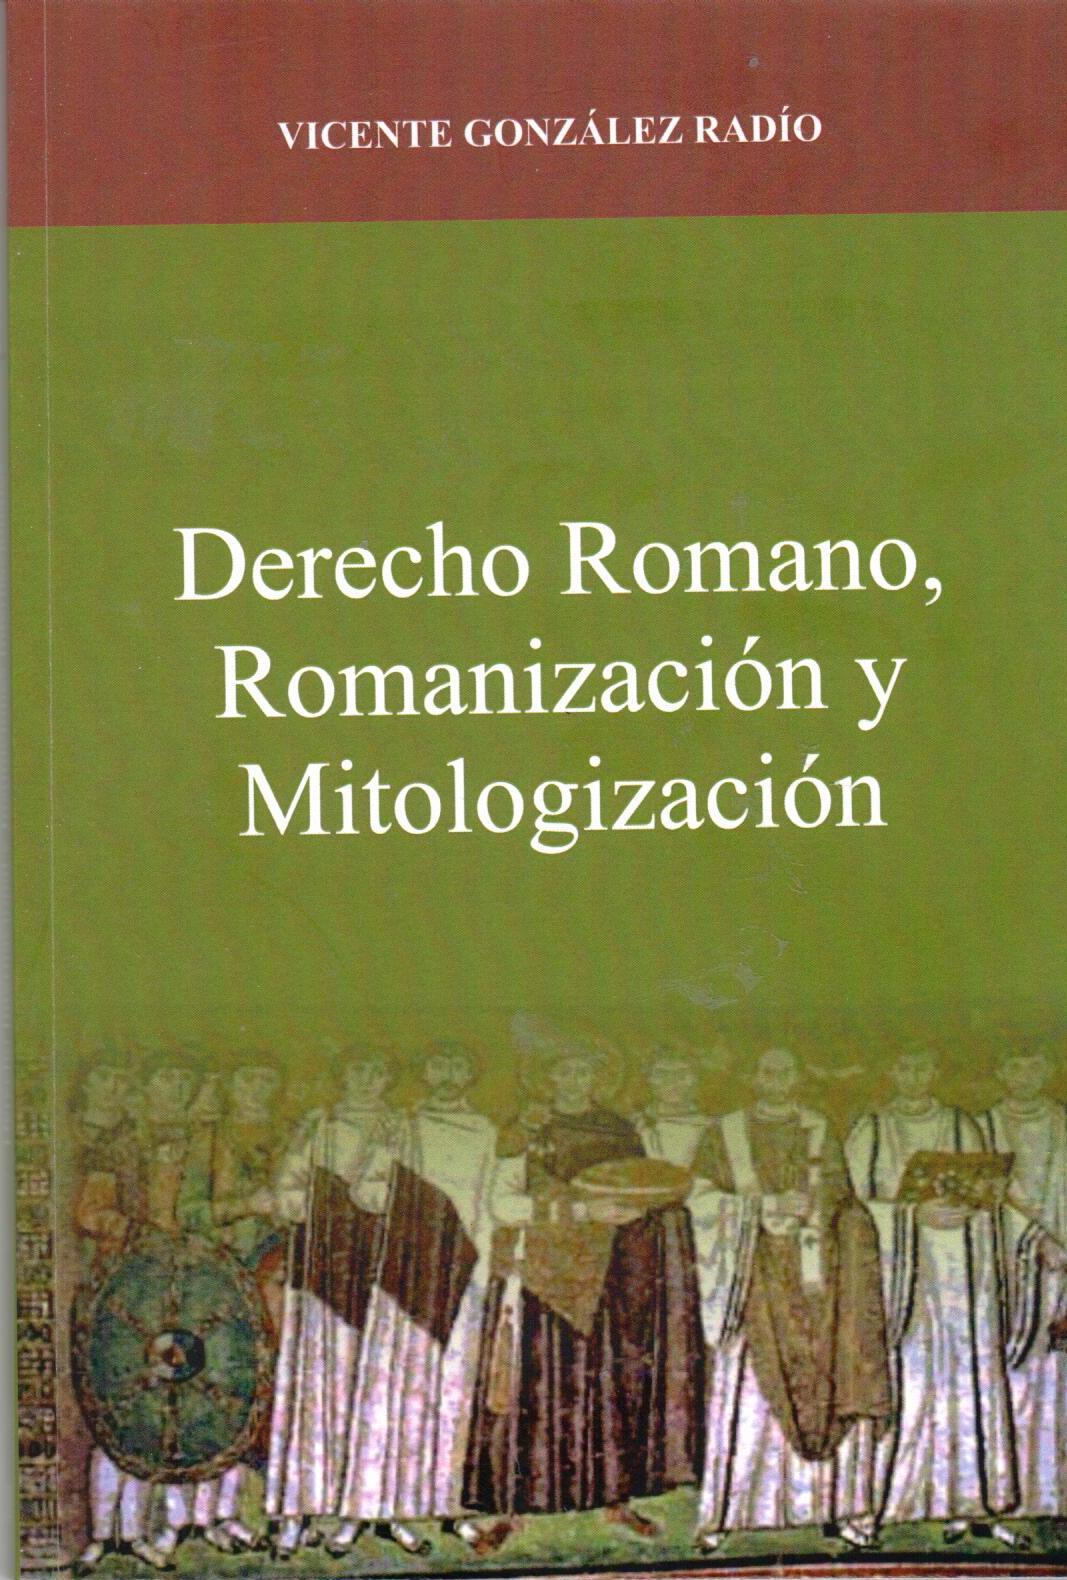 Imagen de portada del libro Derecho romano, romanización y mitologización